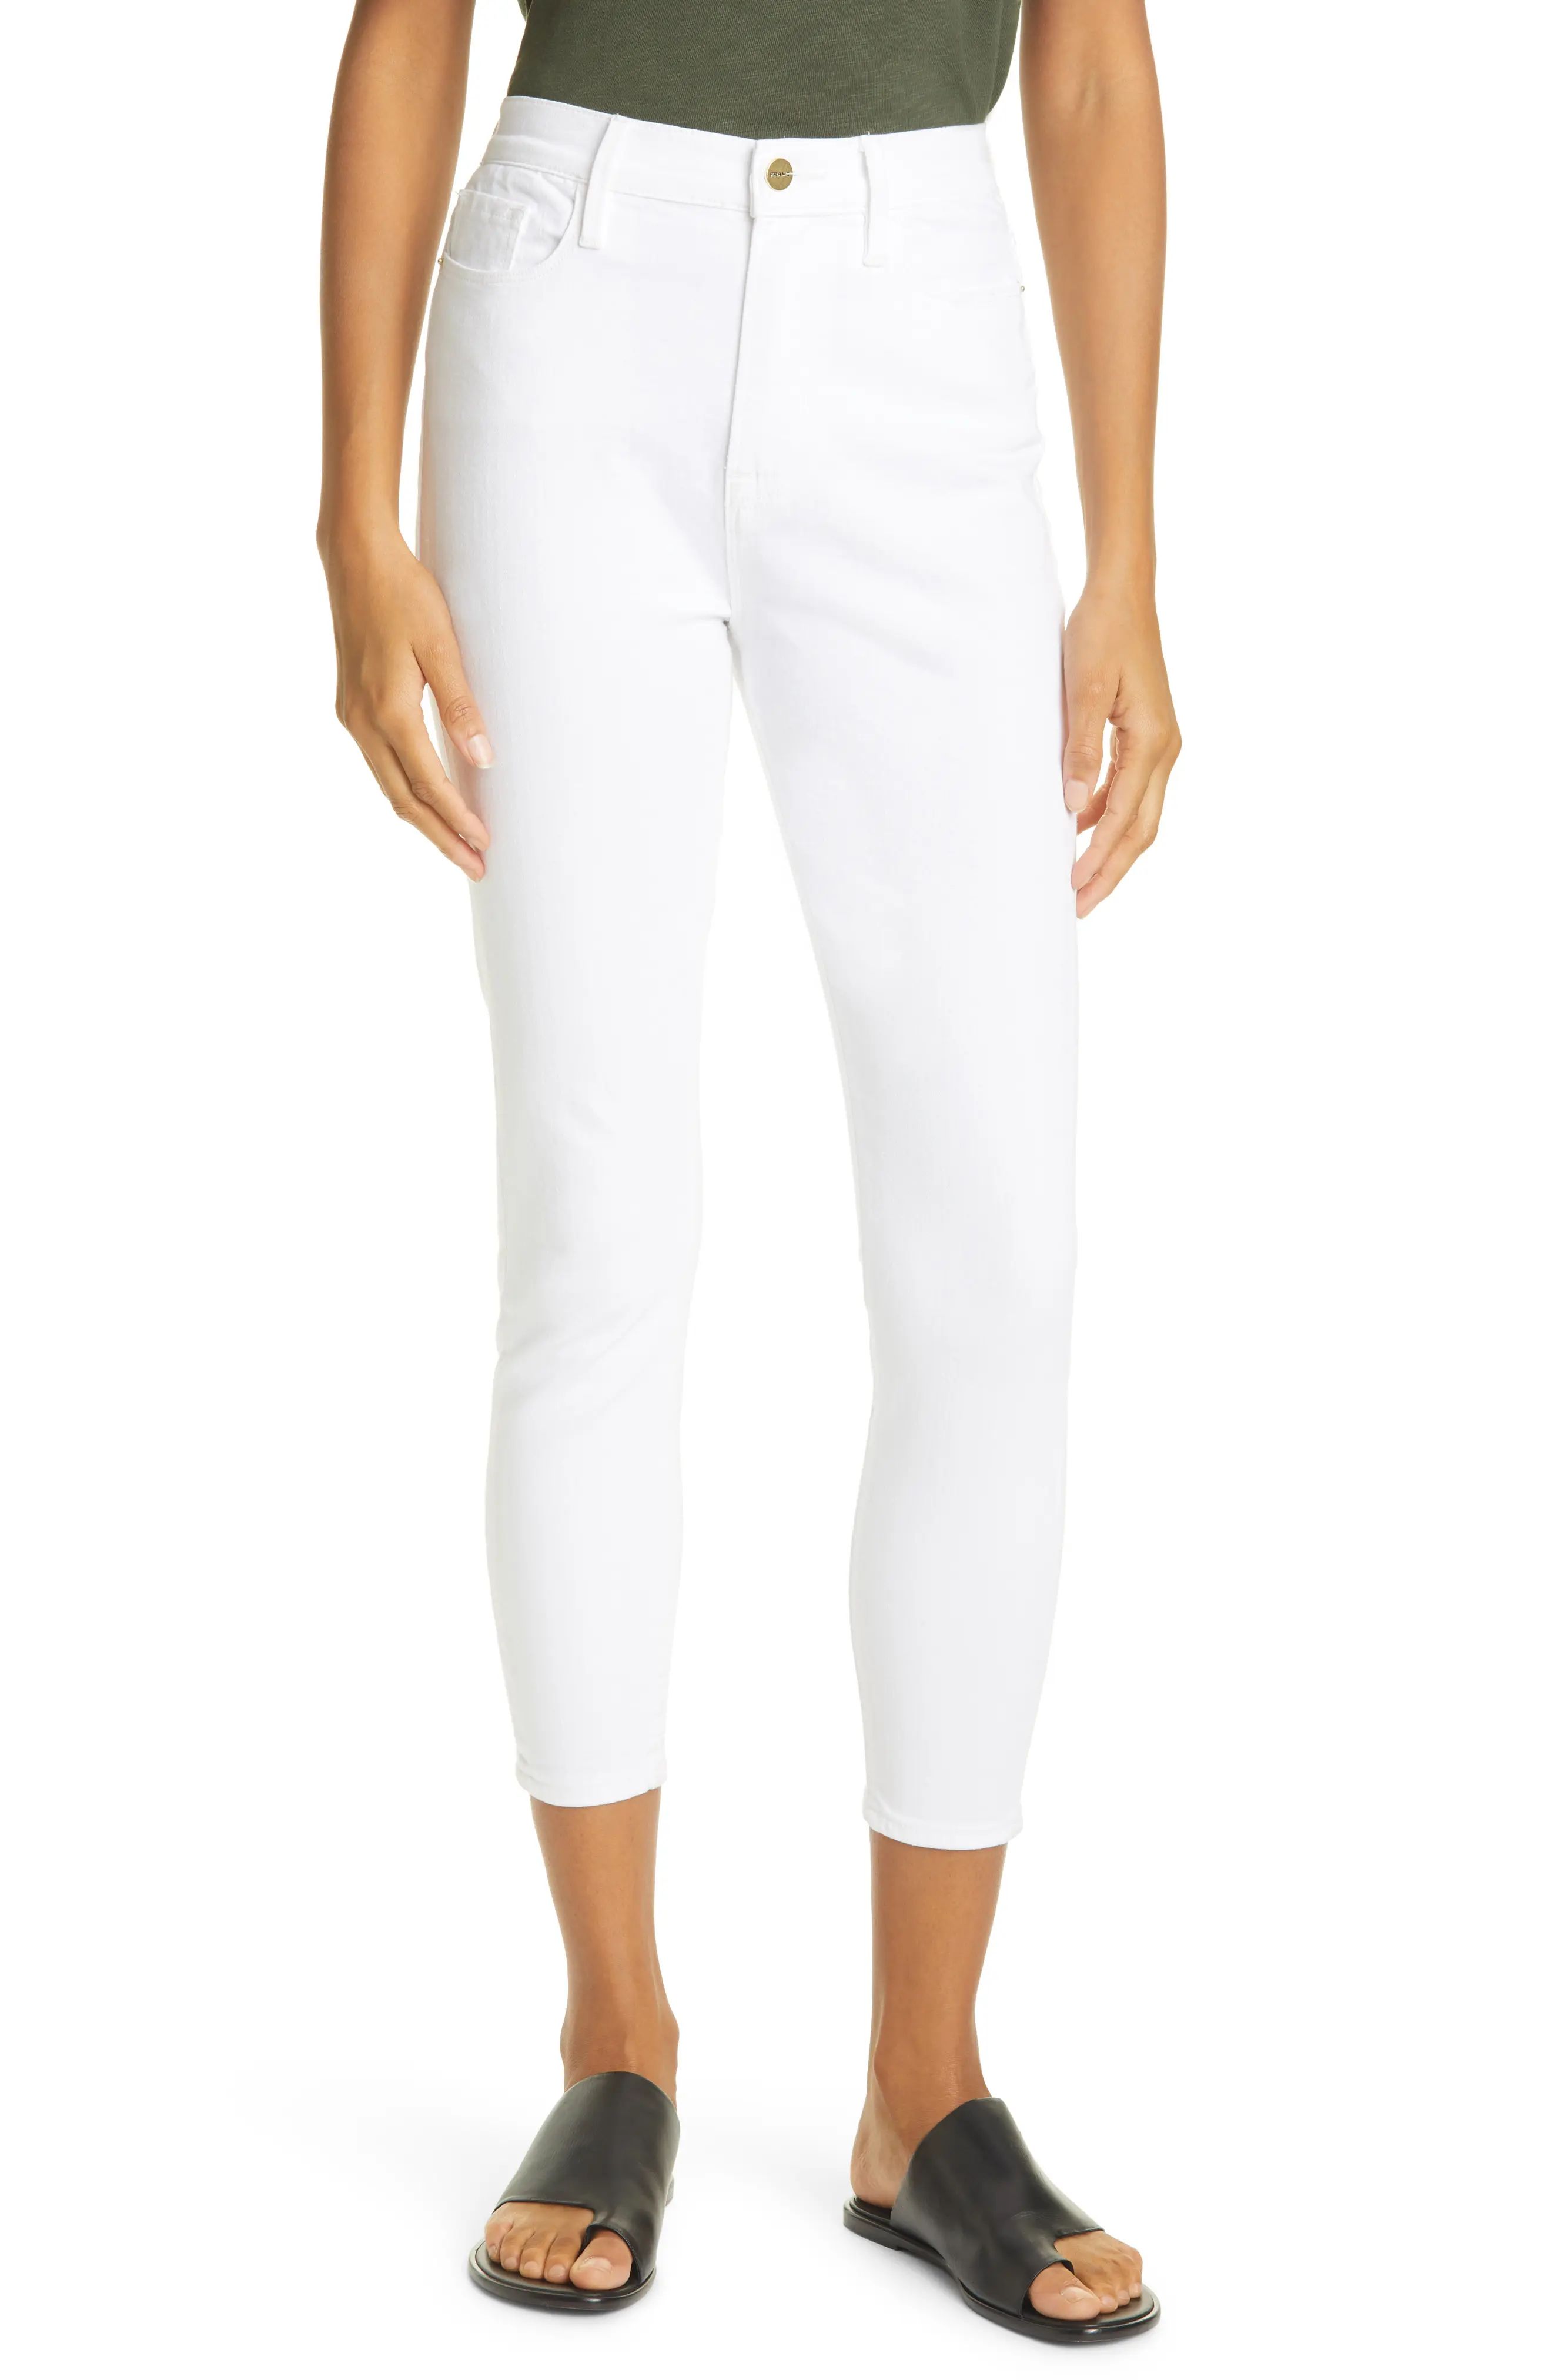 FRAME Ali High Waist Cigarette Crop Skinny Jeans, Size 30 in Blanc at Nordstrom | Nordstrom